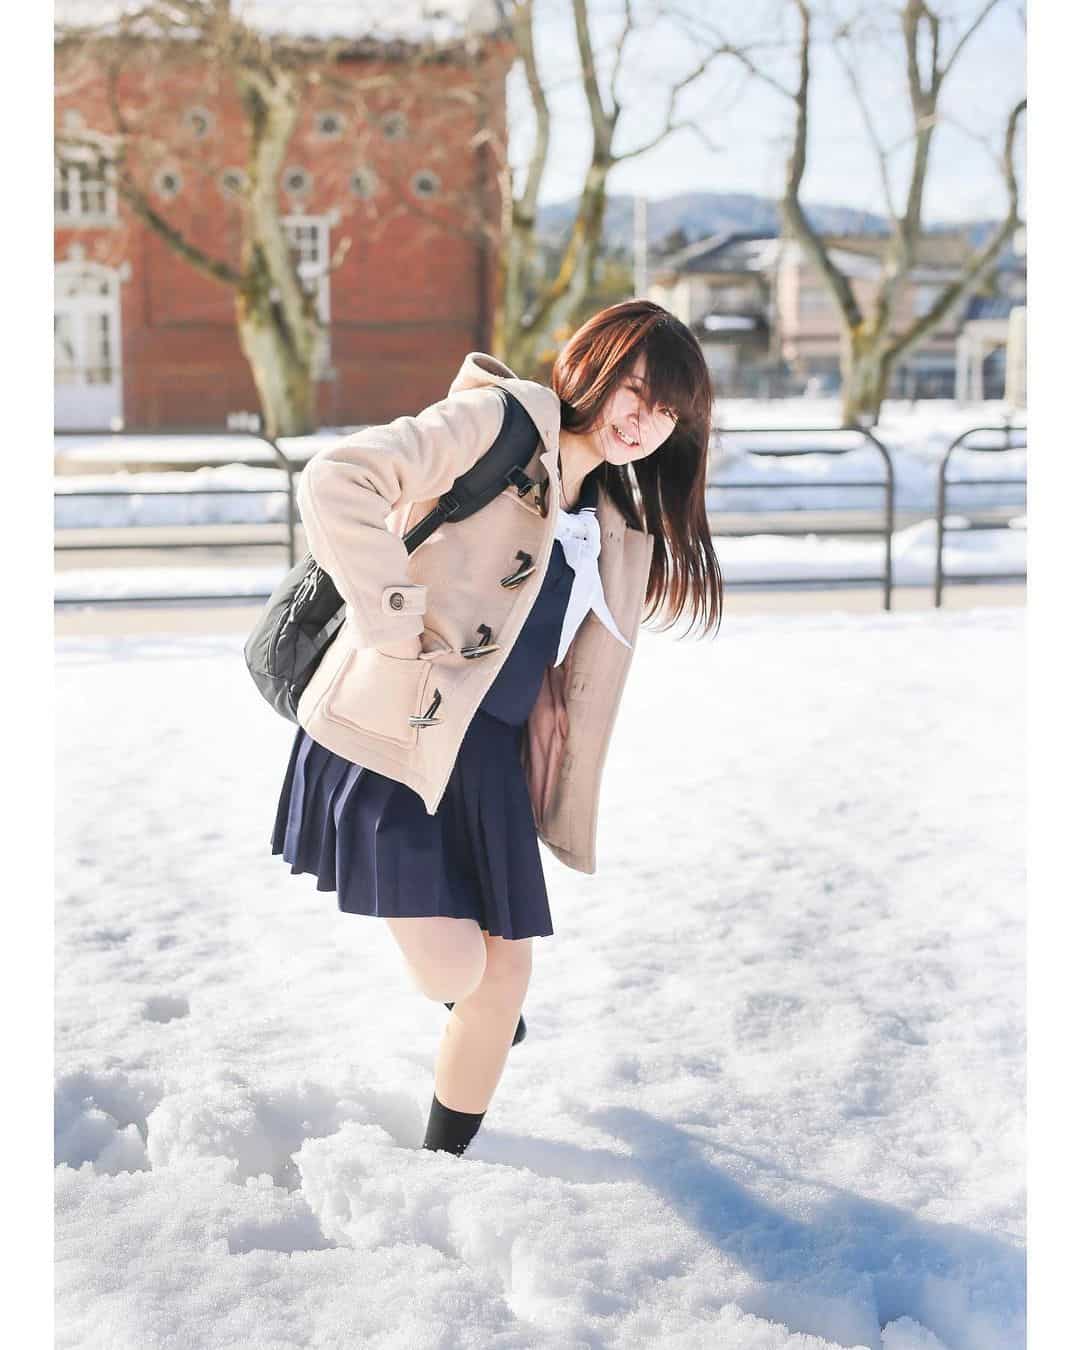 How to meet Japanese girl - Meet Girls Online